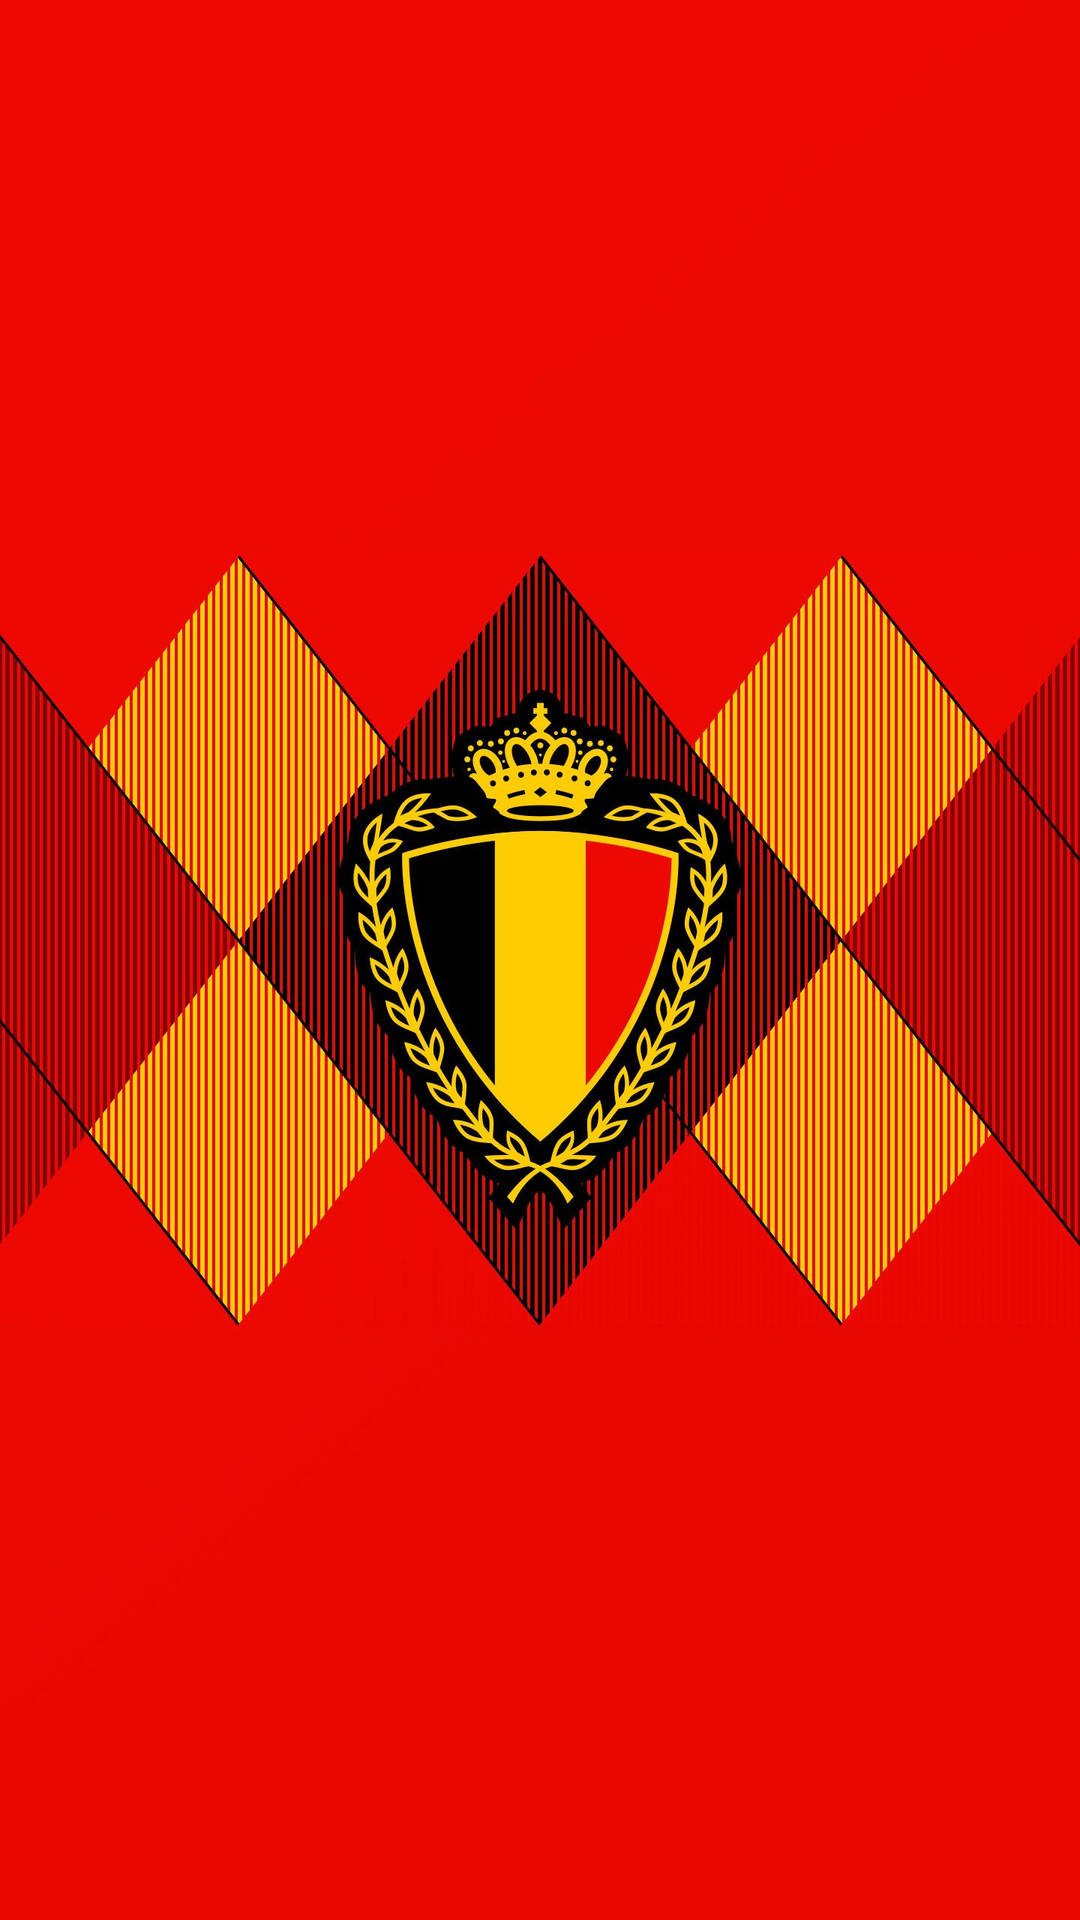 Belgium National Football Team Association Crest